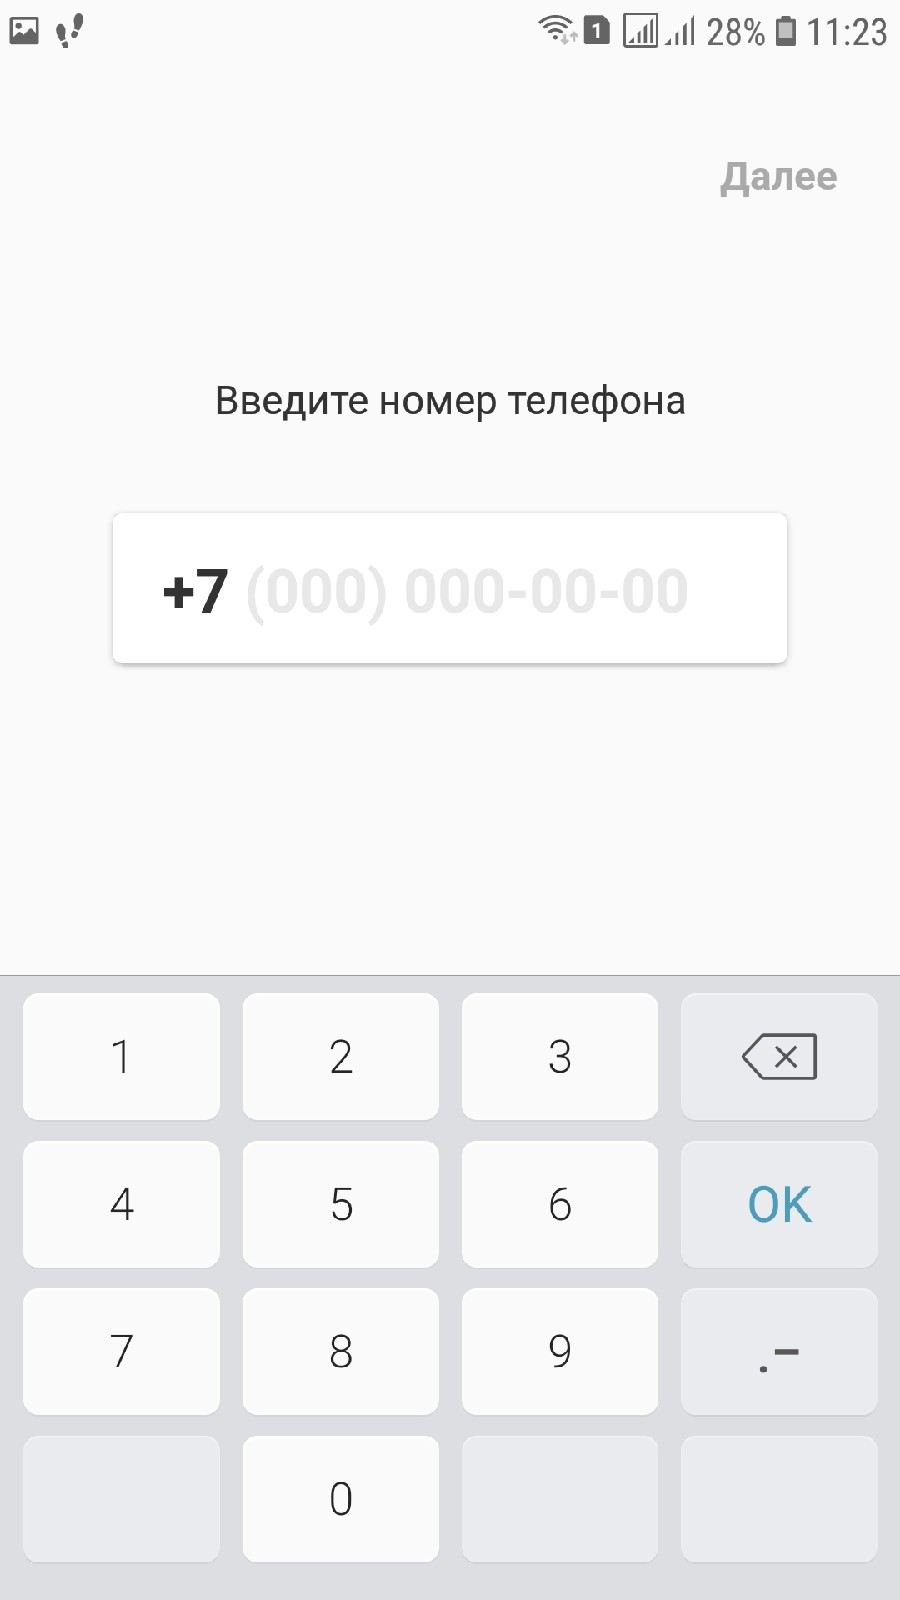 Новое приложение Рокетбанк ИКС для Android